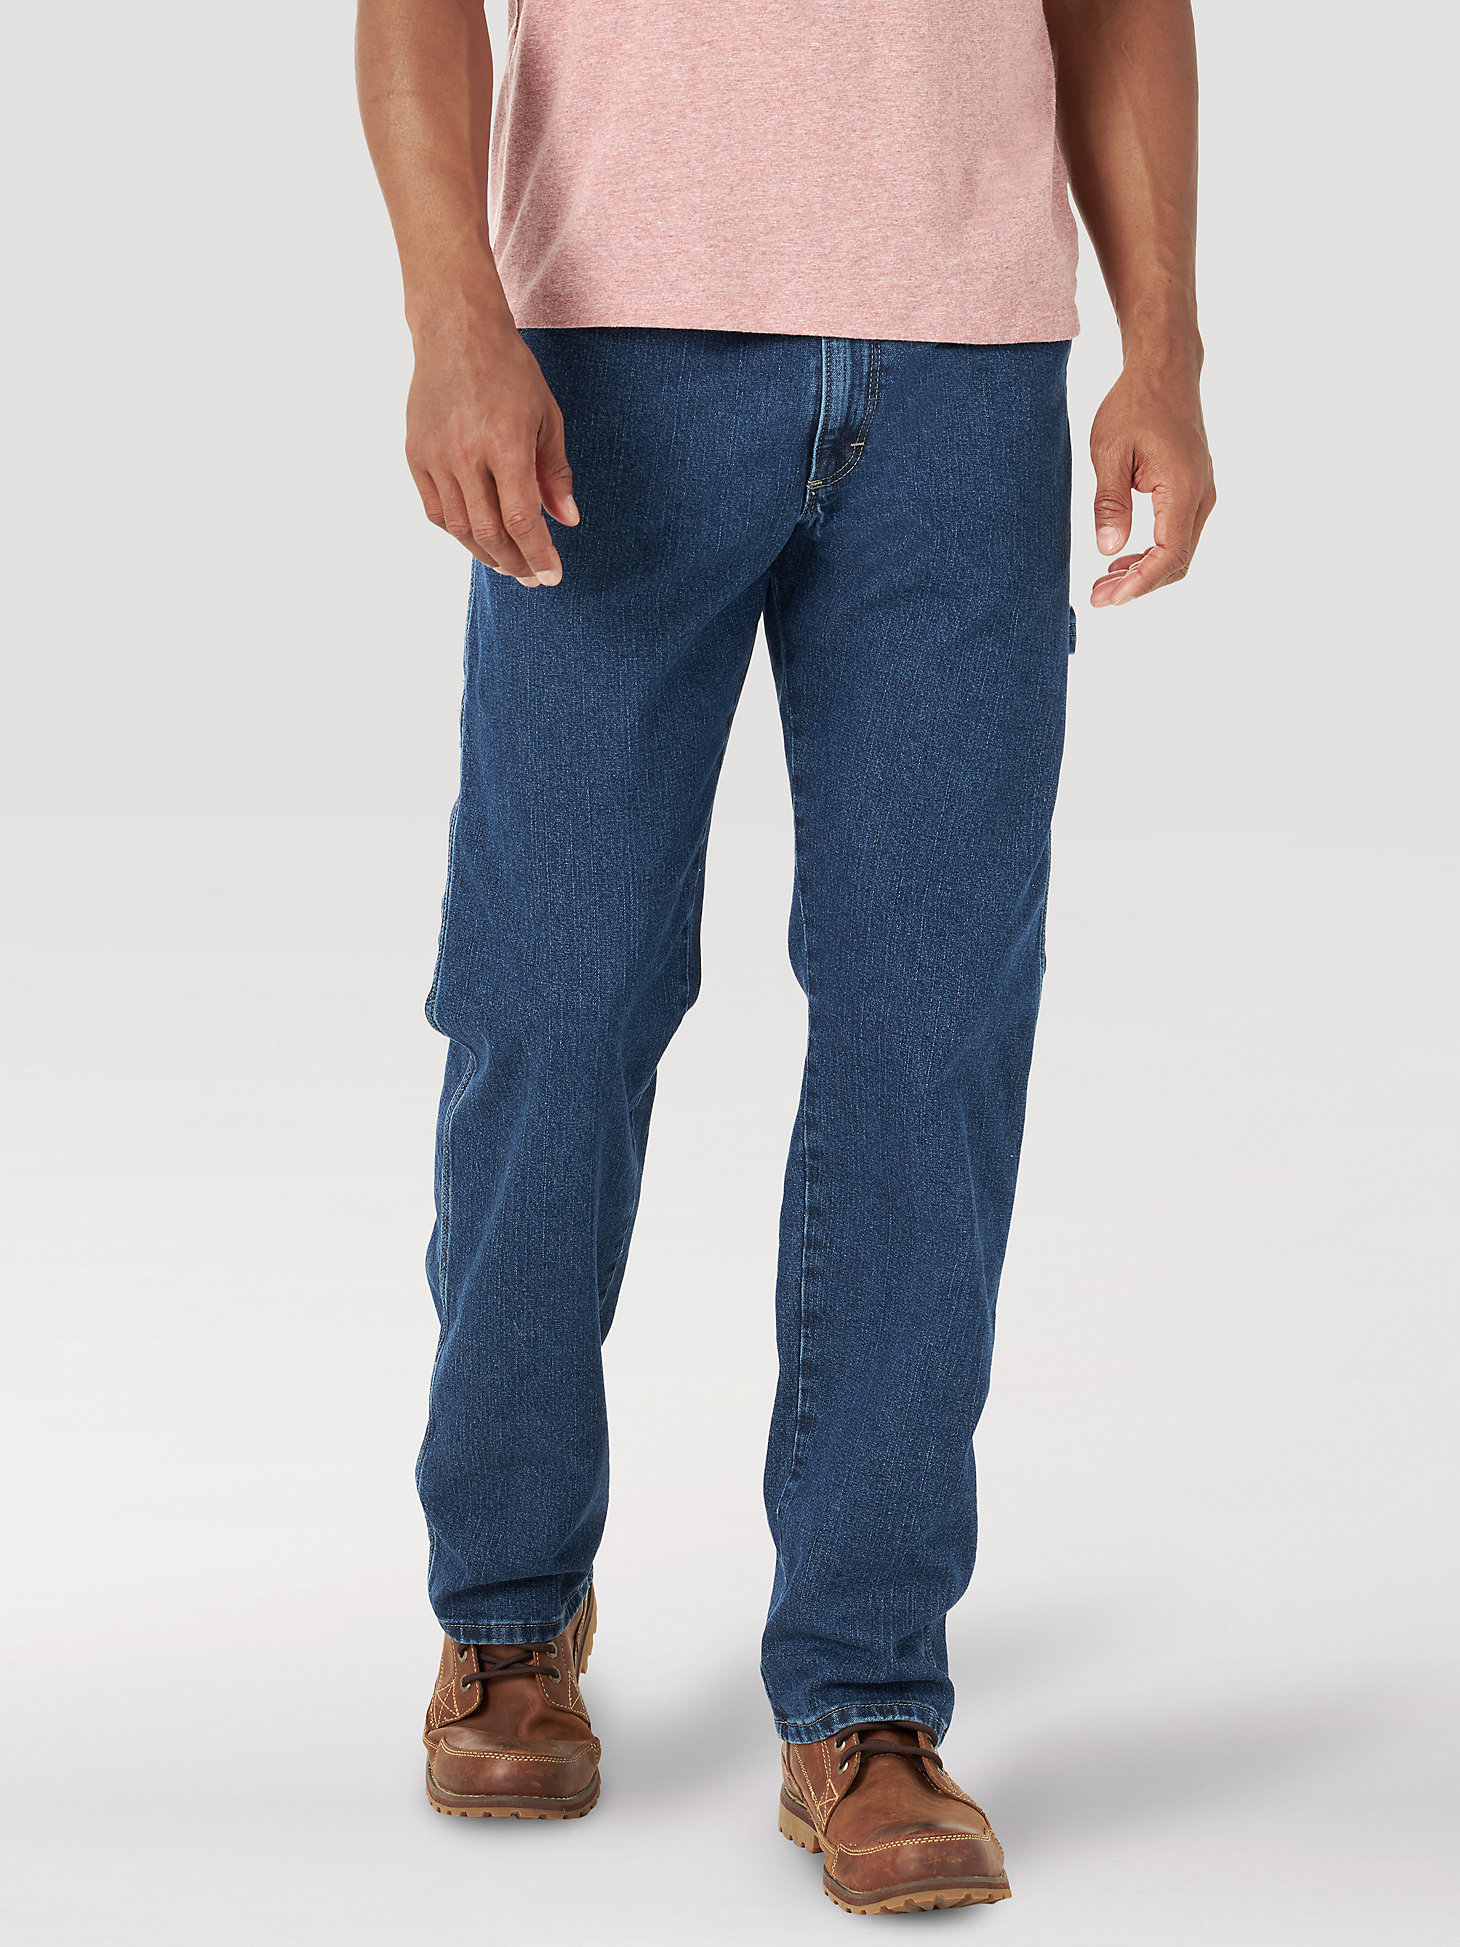 Wrangler® Men's Five Star Premium Carpenter Jean in Dark Vintage alternative view 2